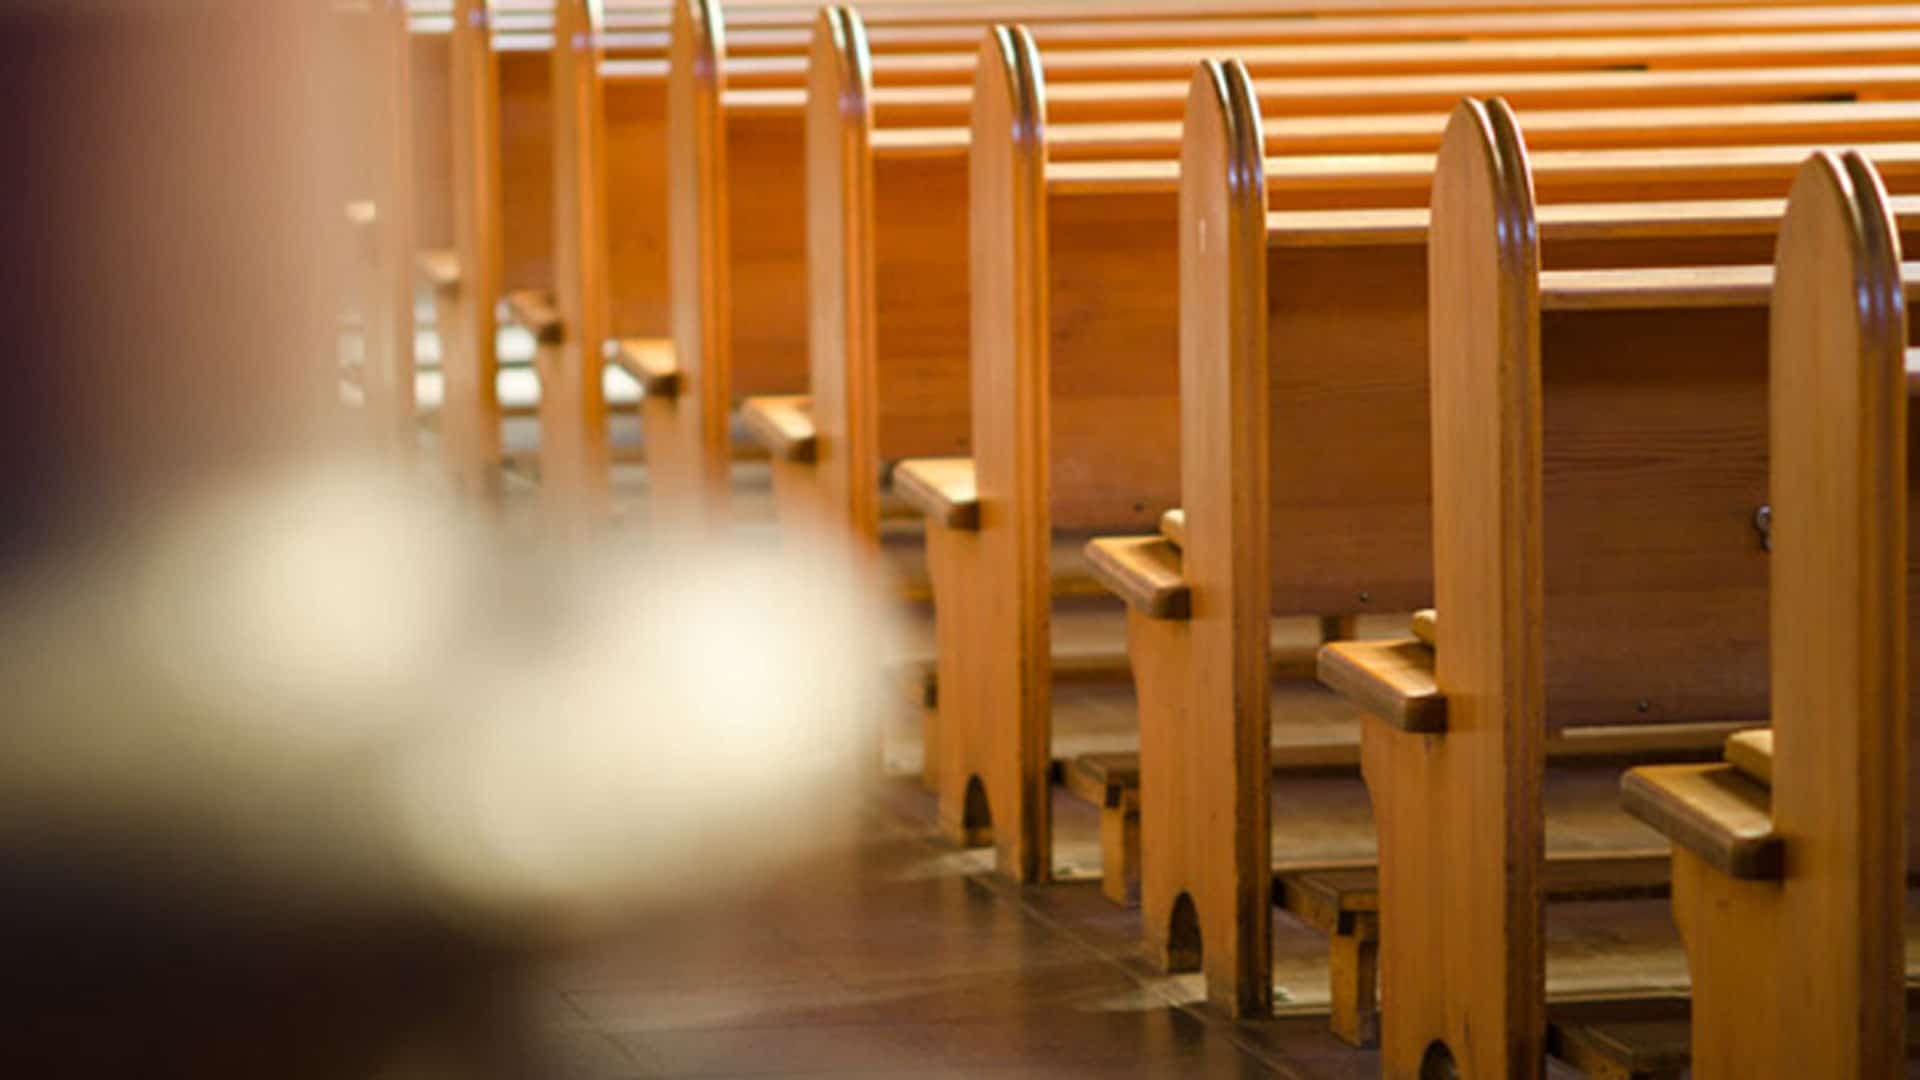 Weil die Mitgliederzahlen rückäufig sind, erwägt die Evangelische Kirche in Deutschland „Spielräume bei der Kirchensteuerpflicht“ junger Menschen